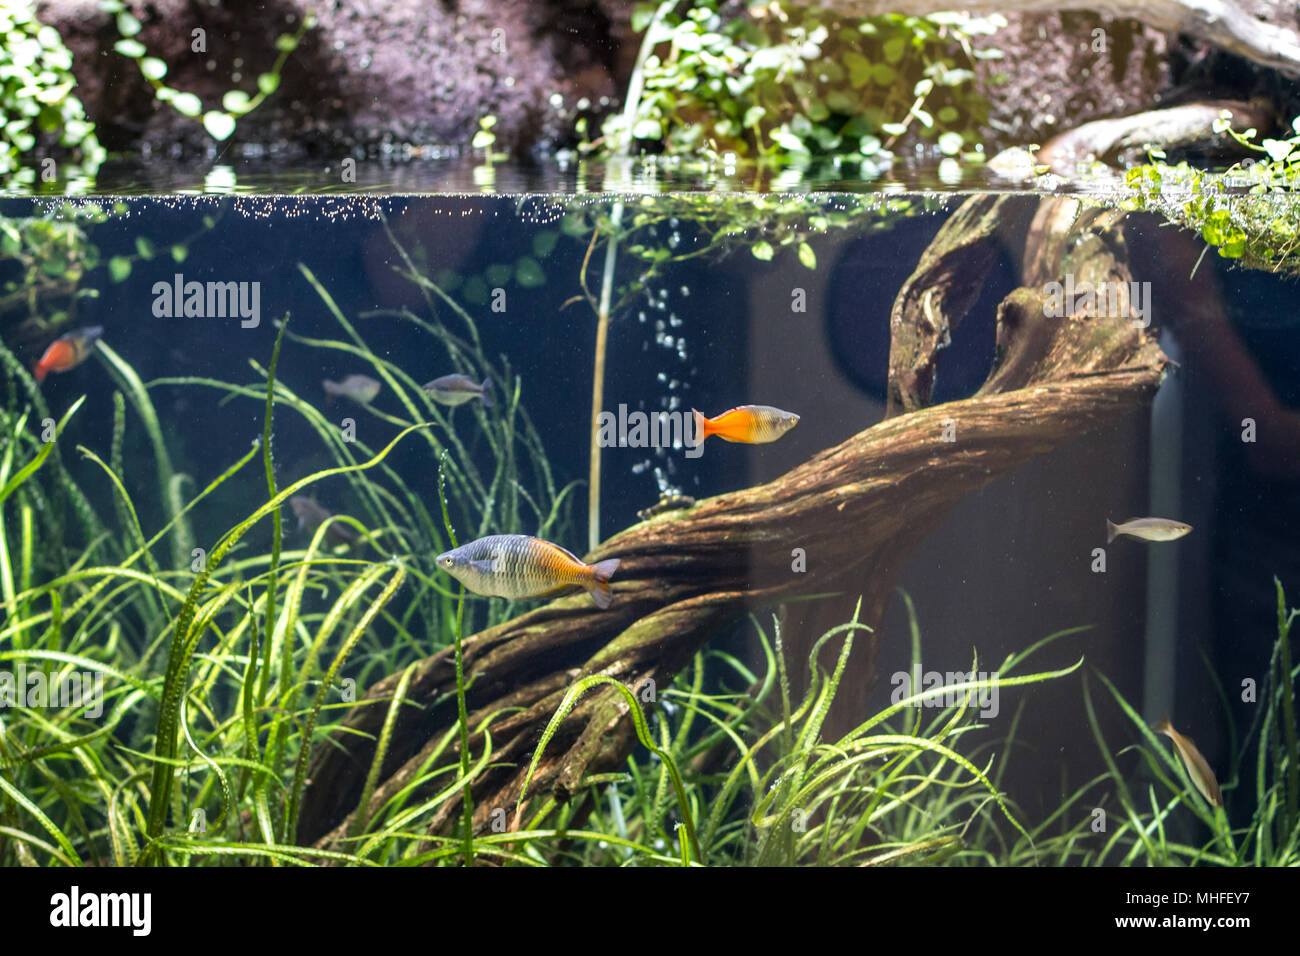 Fish in an aquarium Stock Photo